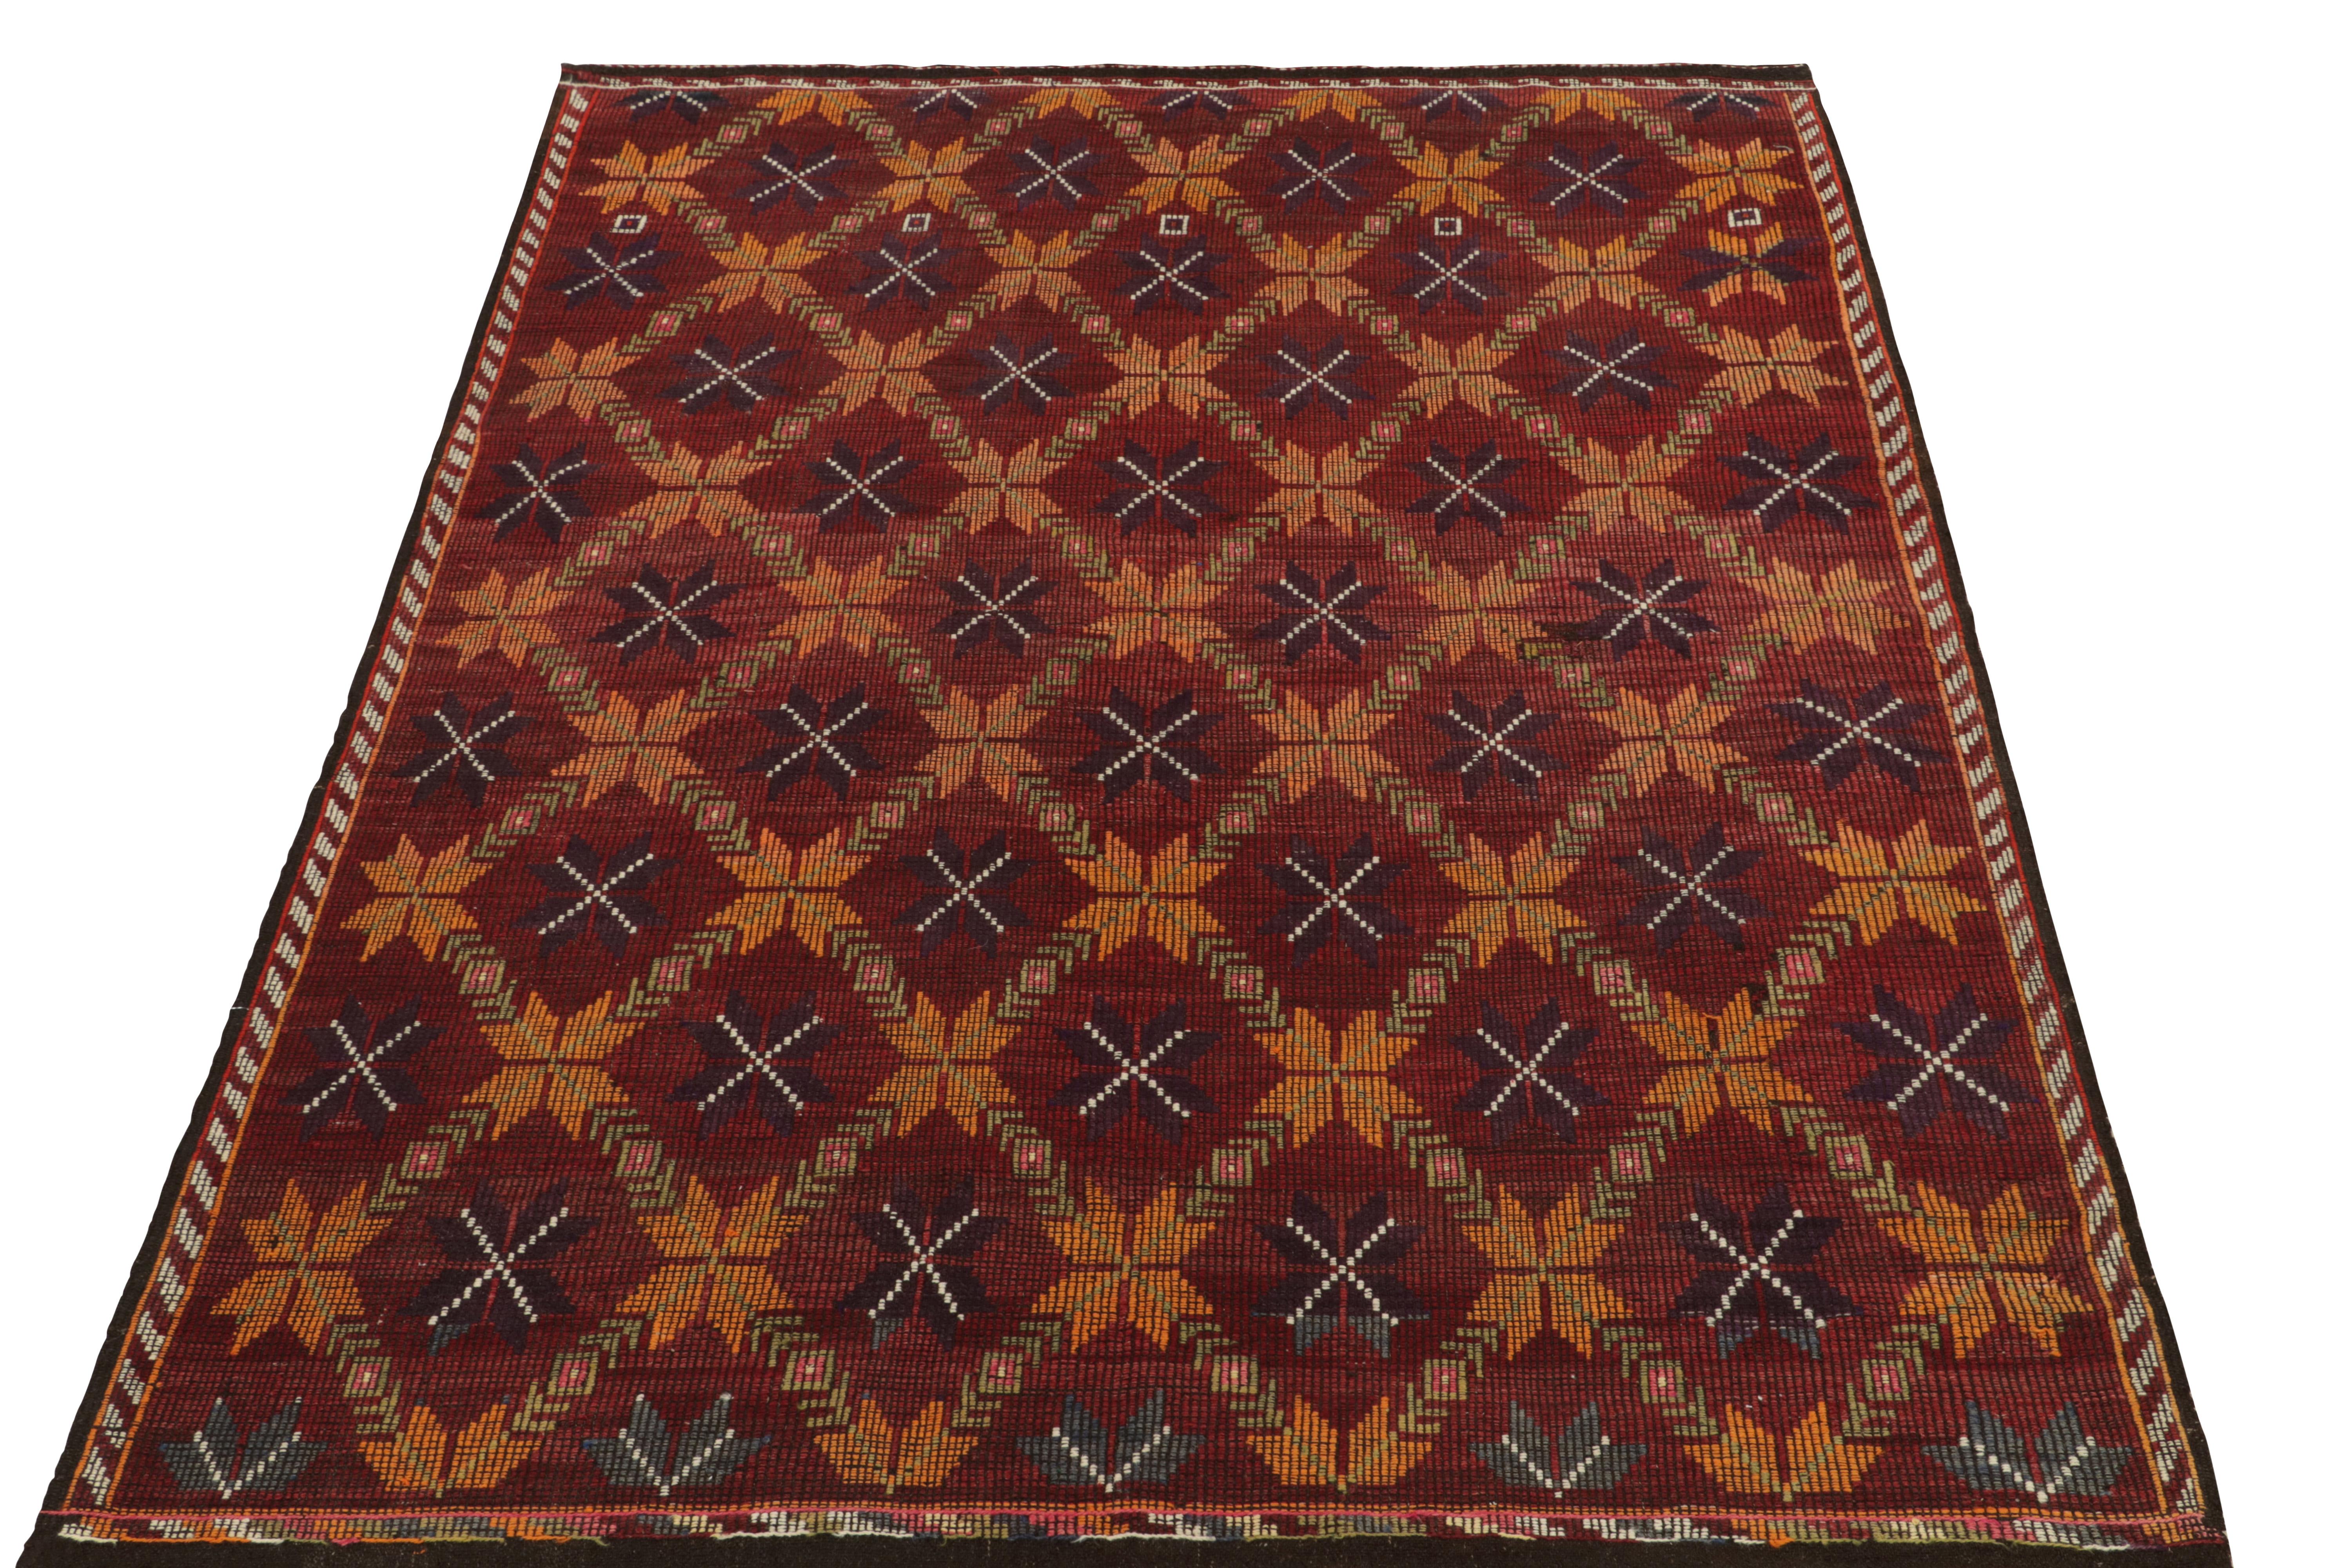 Ein alter Cecim-Kelim-Teppich im kurdischen Stil, der unsere Flachgewebe-Kollektion bereichert. Dieser 7x9 große Teppich besticht durch seine tadellosen Stickereien und Details im Design, die für die für diese Linie bekannten texturierten Gewebe